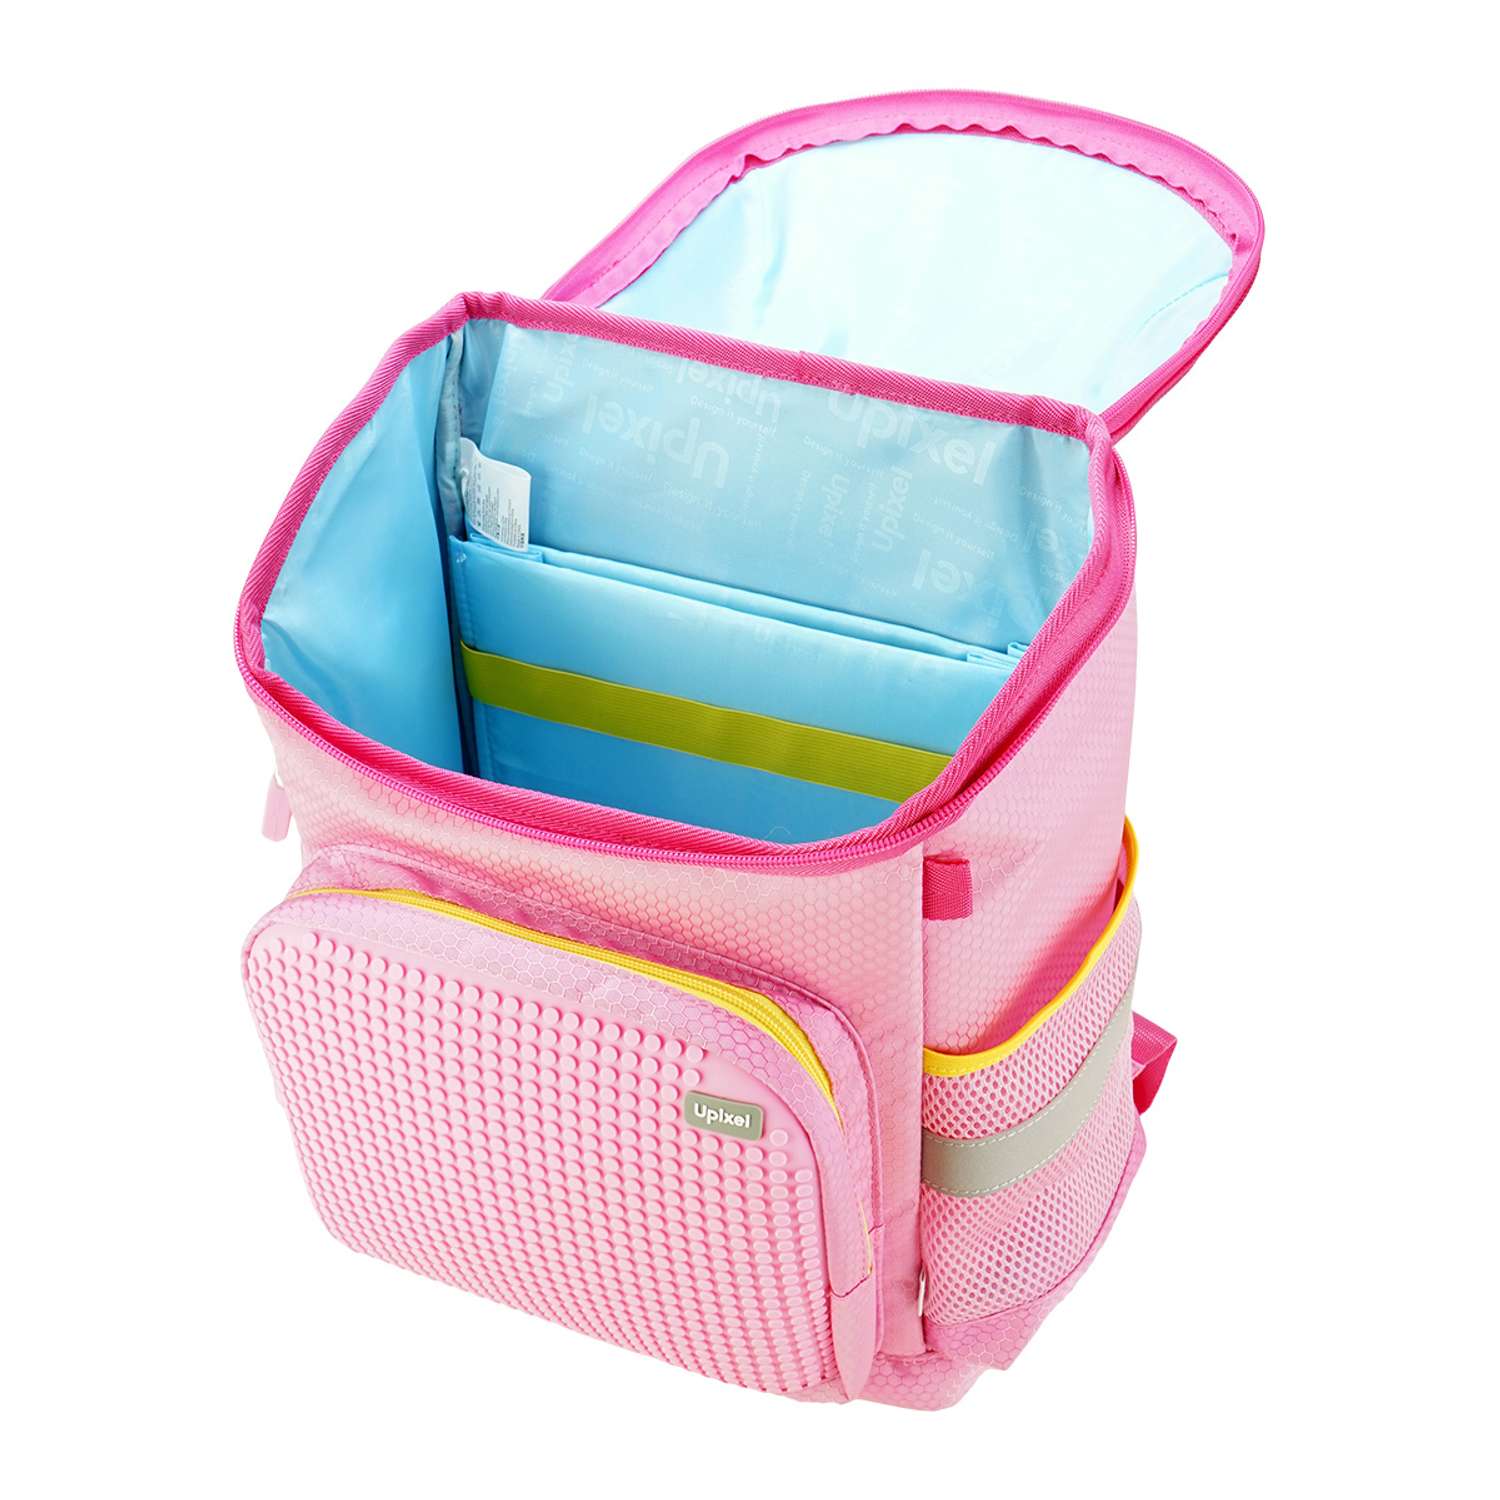 Рюкзак школьный Upixel super Class school bag WY-A019 Розовый - фото 3